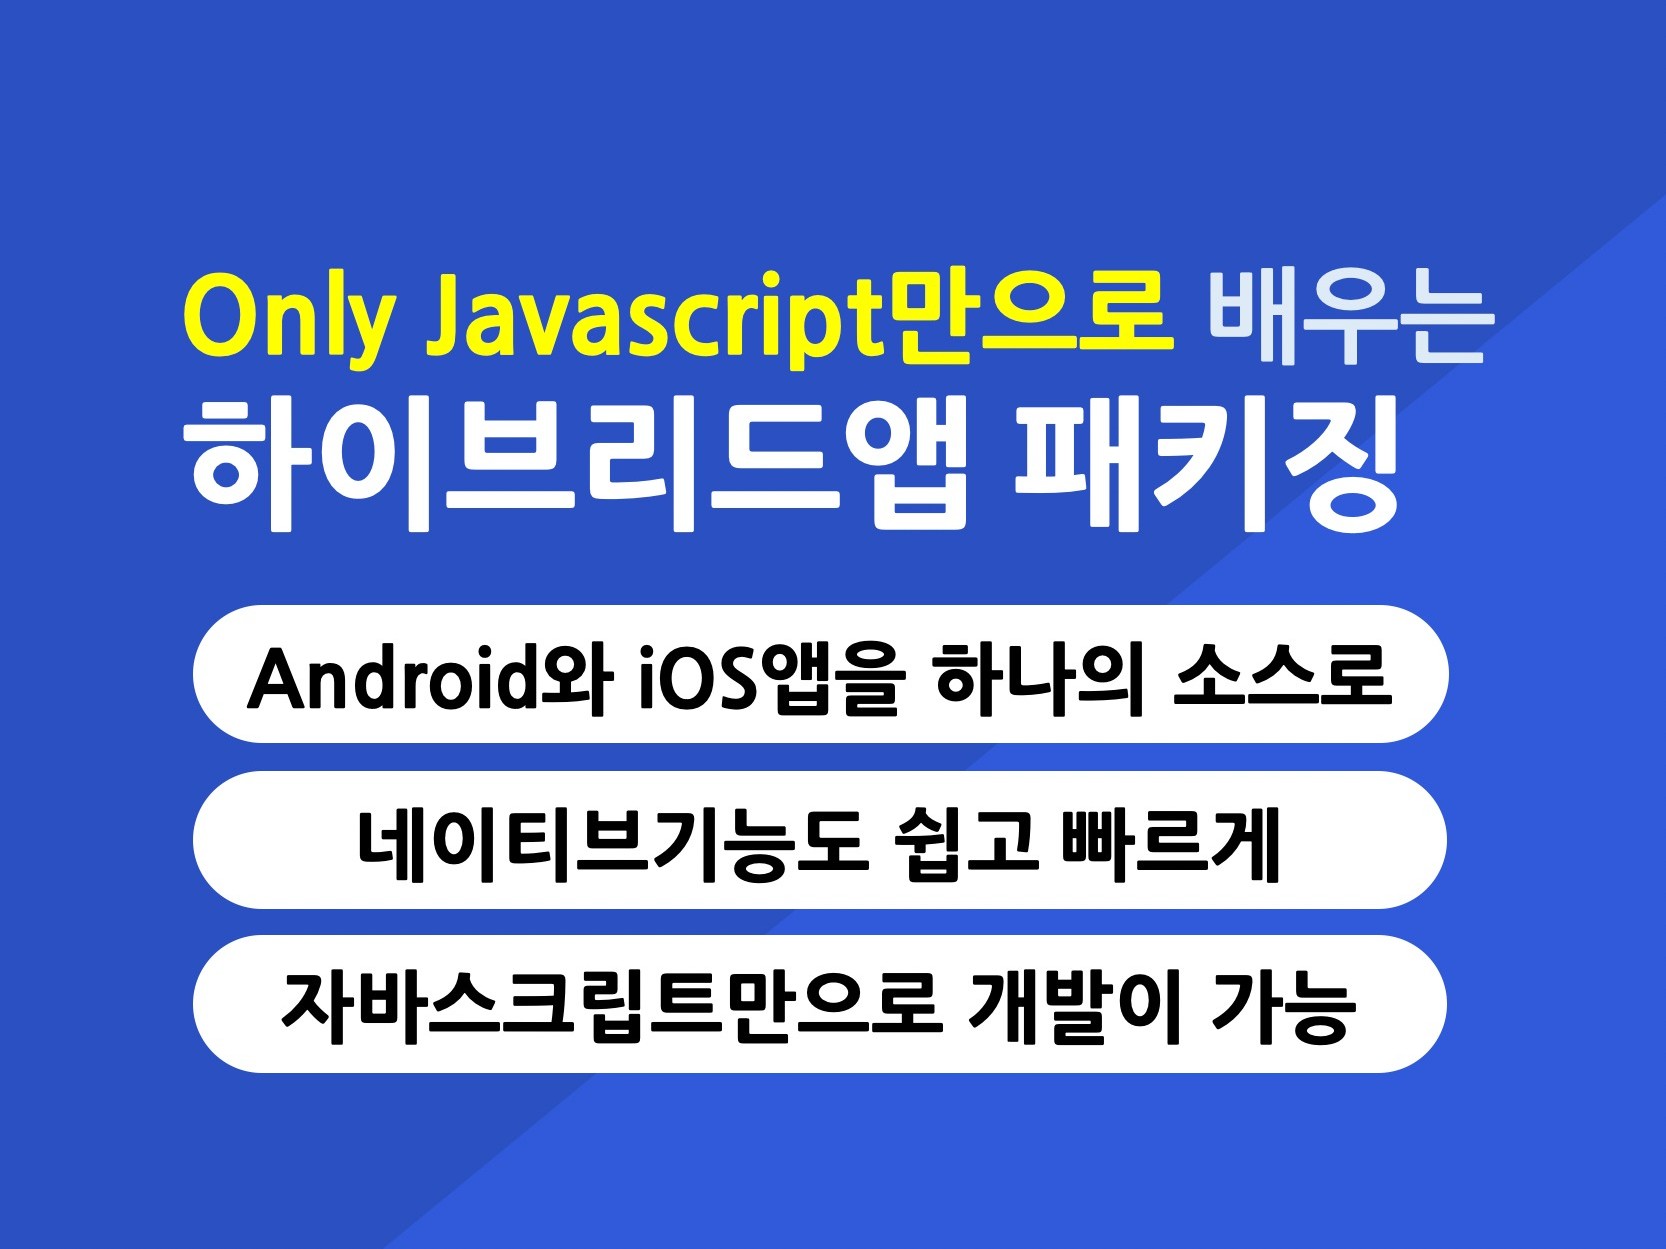 Javascript만으로 배우는 하이브리드앱패키징